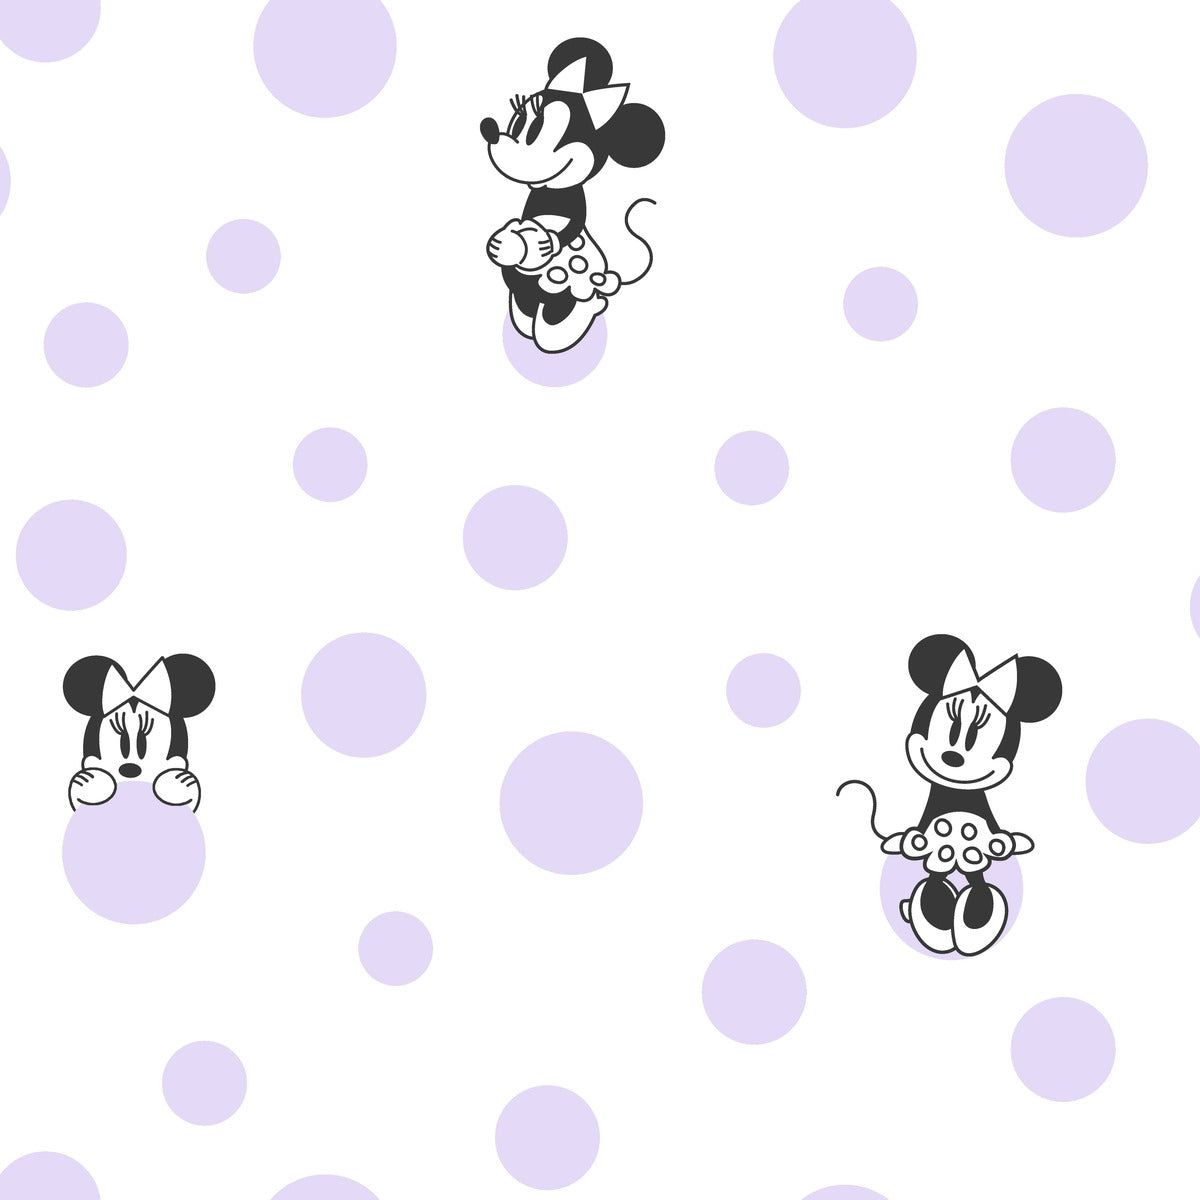  Minnie Mouse Hintergrundbild 1200x1200. Disney Kids Vol. 4 Minnie Mouse Dots Wallpaper